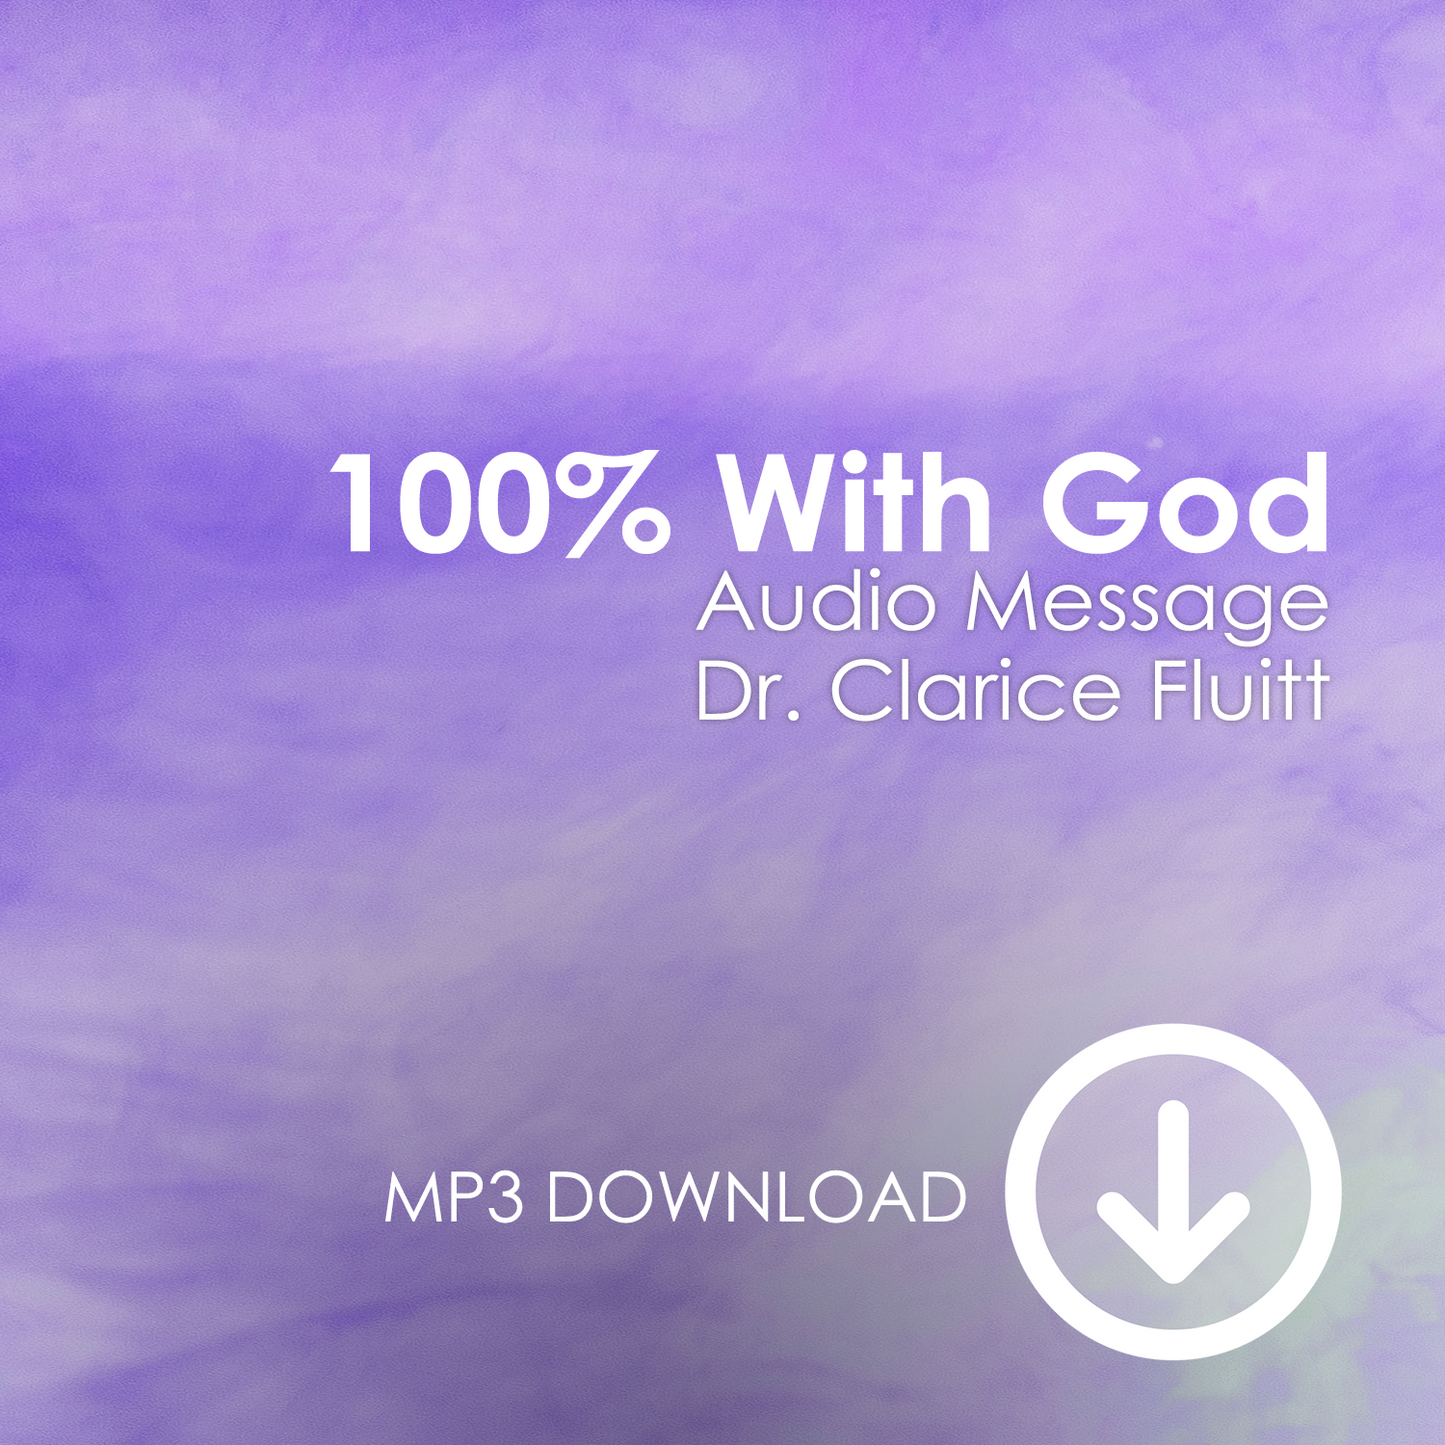 100% With God MP3